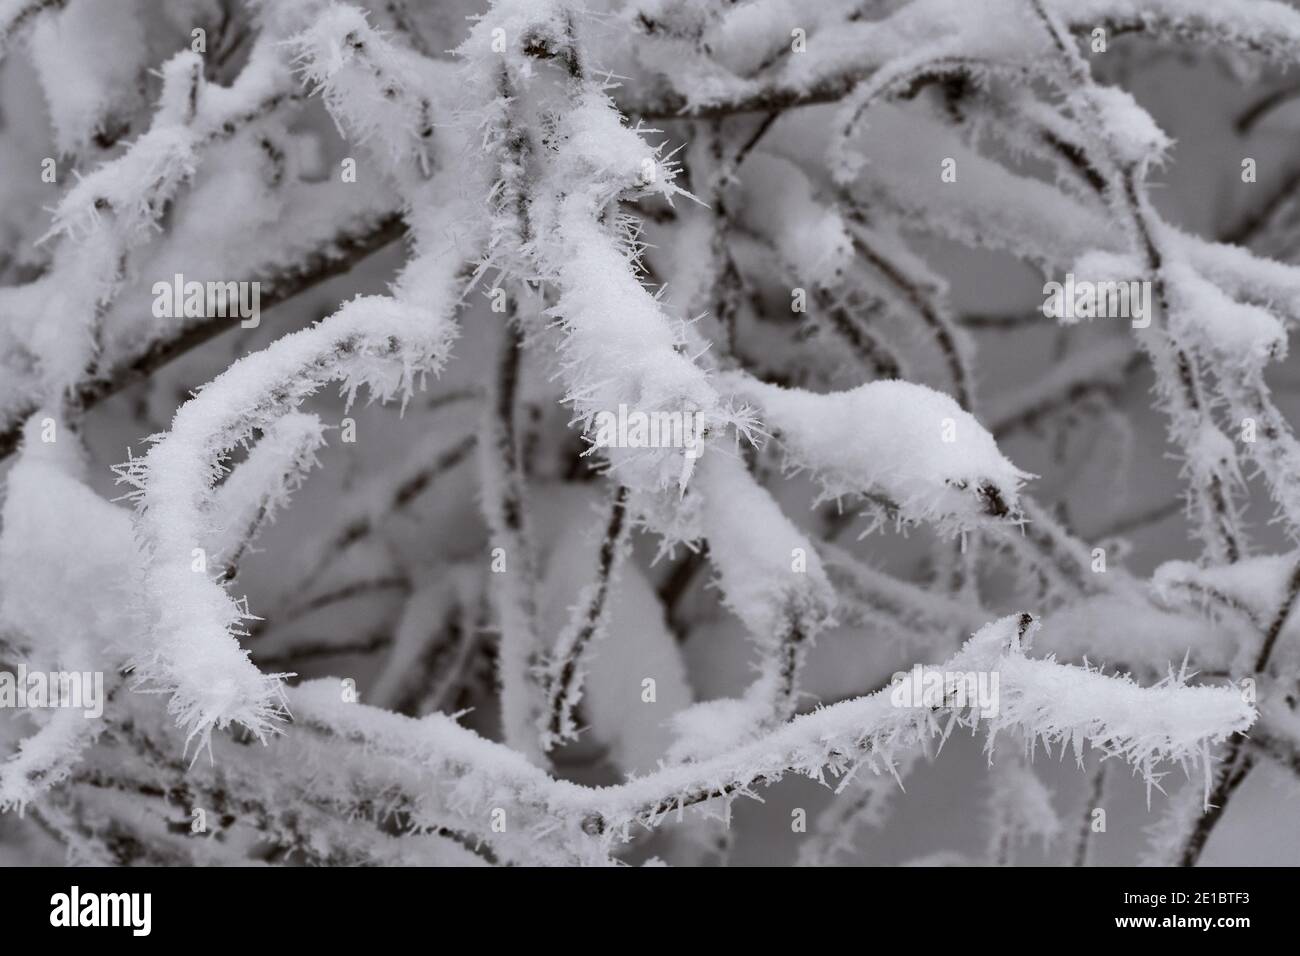 Nahaufnahme von windförmigem, scharfem Rimieis auf schneebedeckten Nadelbaumzweigen während des kalten Wintertages. Stockfoto